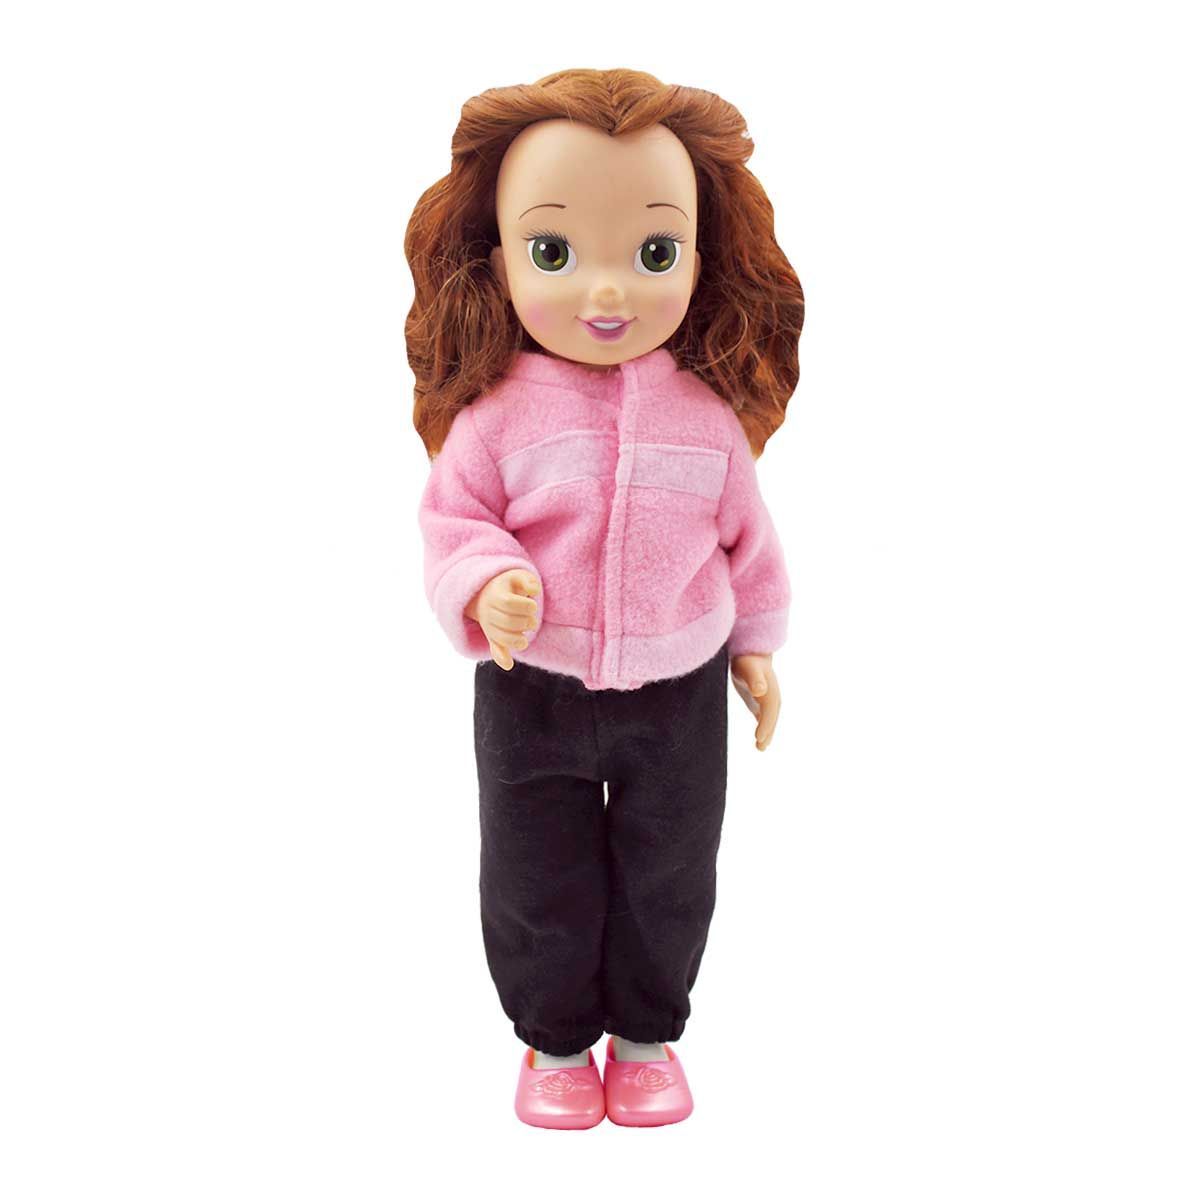 Одежда Dolls Accessories для Дисней Аниматор и кукол 36-40 см Флисочка